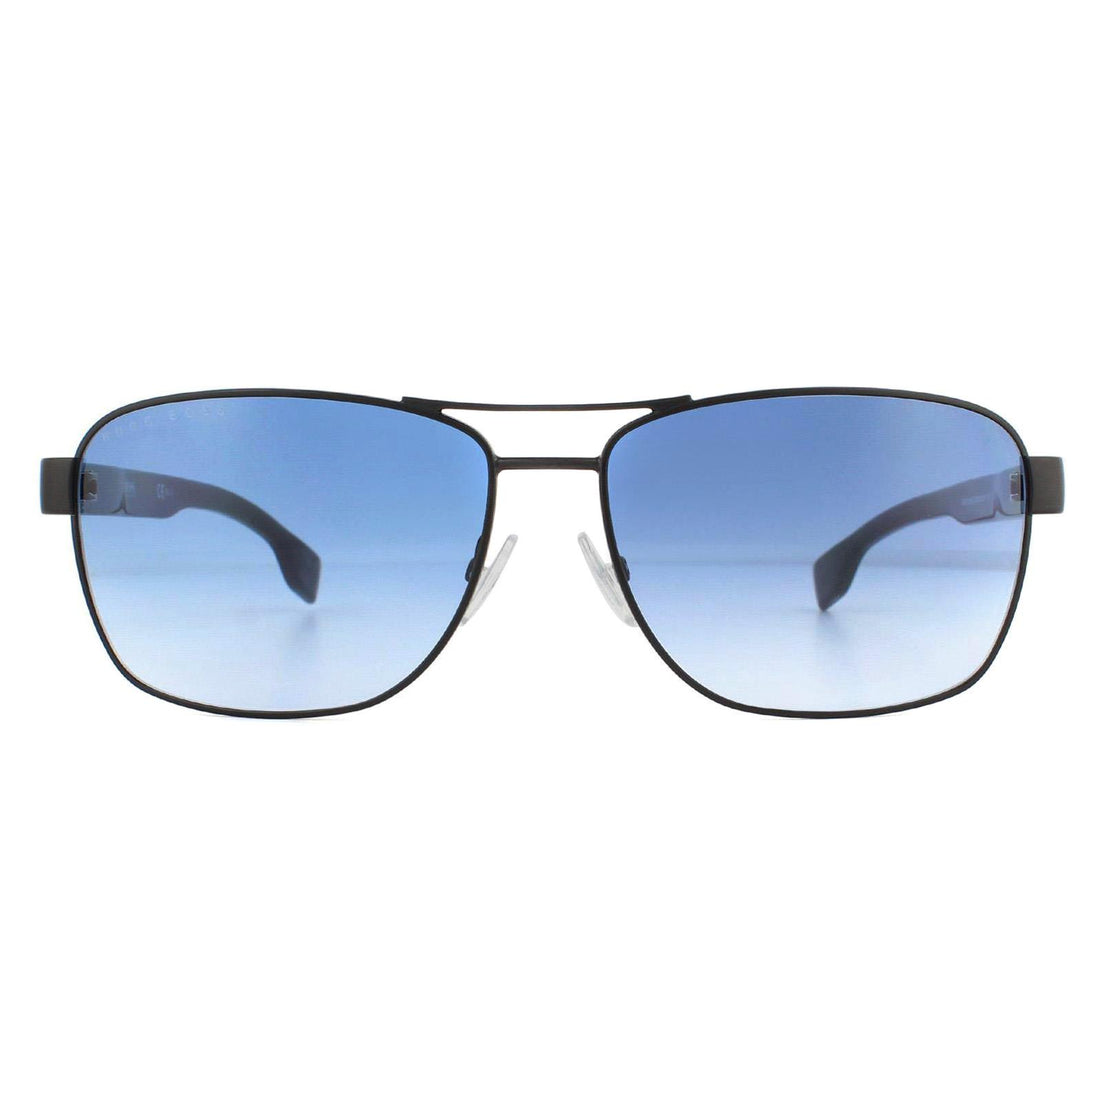 Hugo Boss BOSS 1240/S Sunglasses Matte Black / Blue Gradient